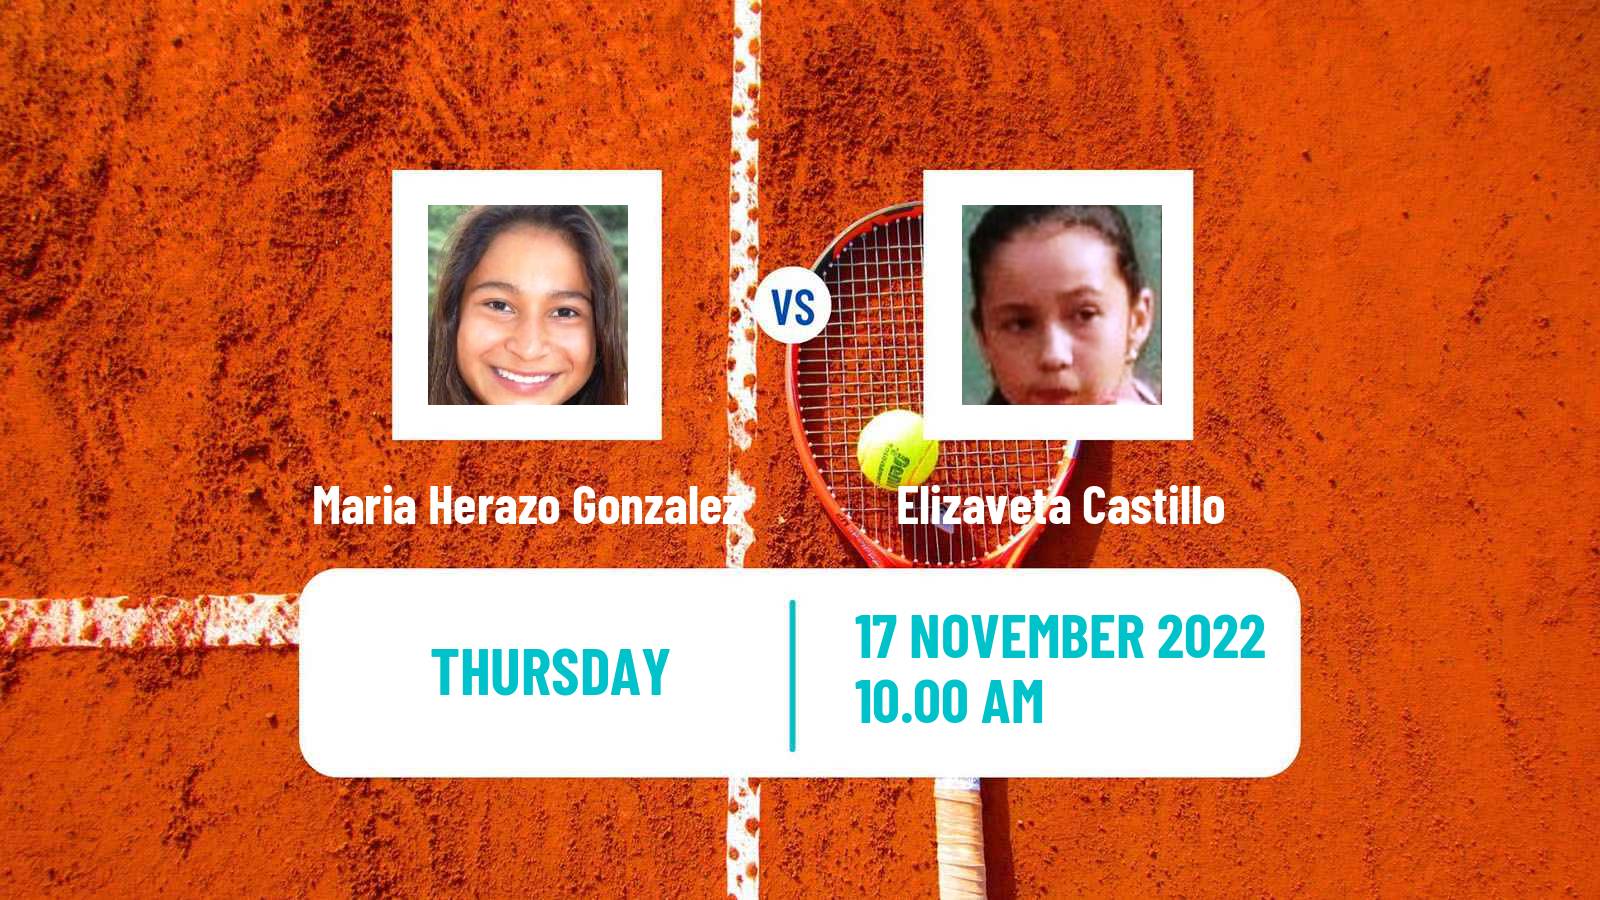 Tennis ITF Tournaments Maria Herazo Gonzalez - Elizaveta Castillo